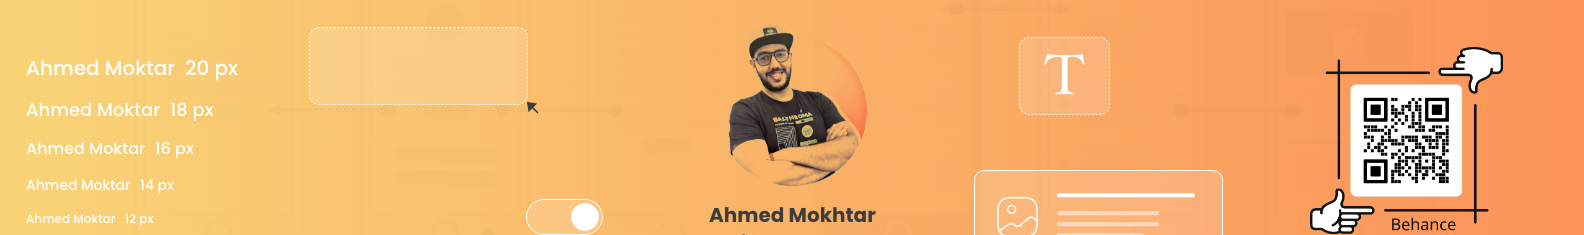 Ahmed Mokhtar profil başlığı